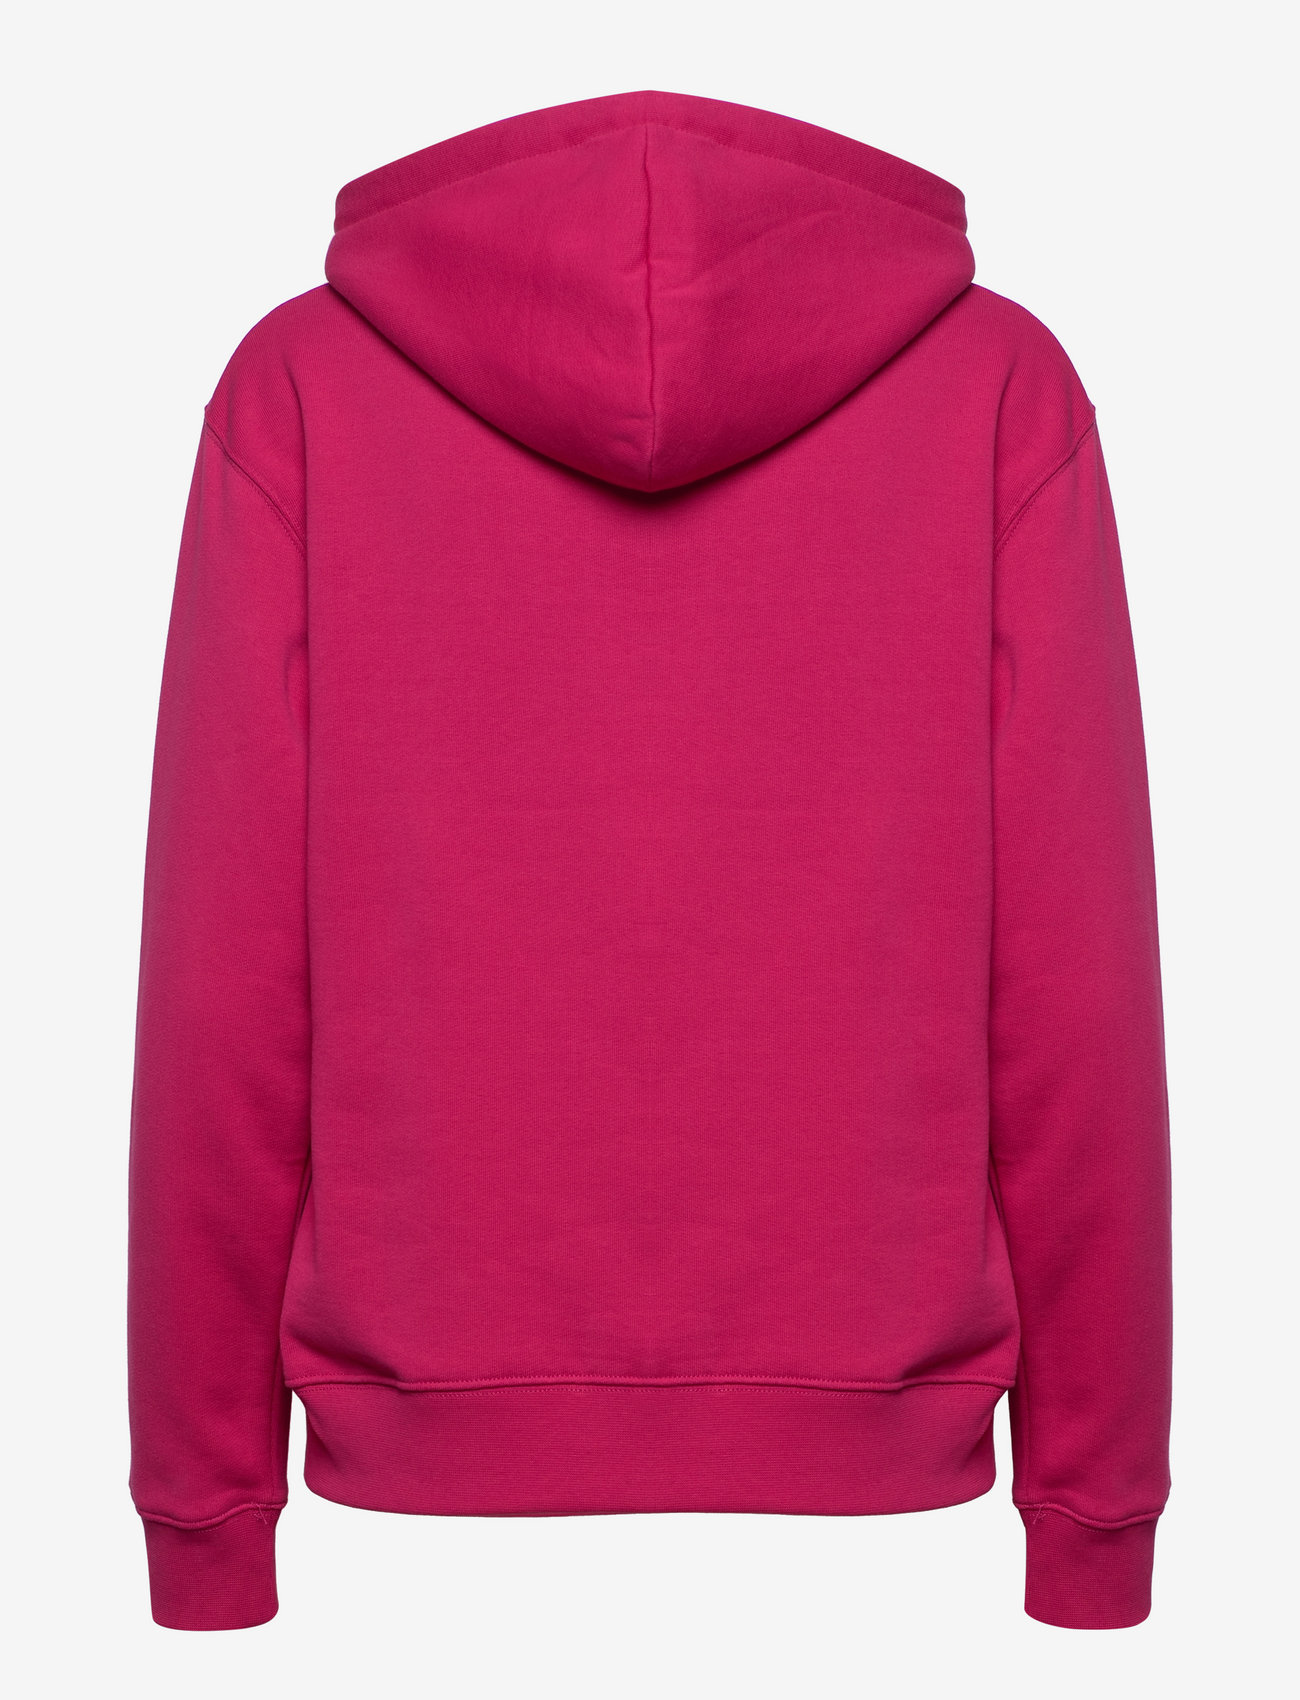 Double A by Wood Wood - Jenn hoodie - sweatshirts & hoodies - pink - 1